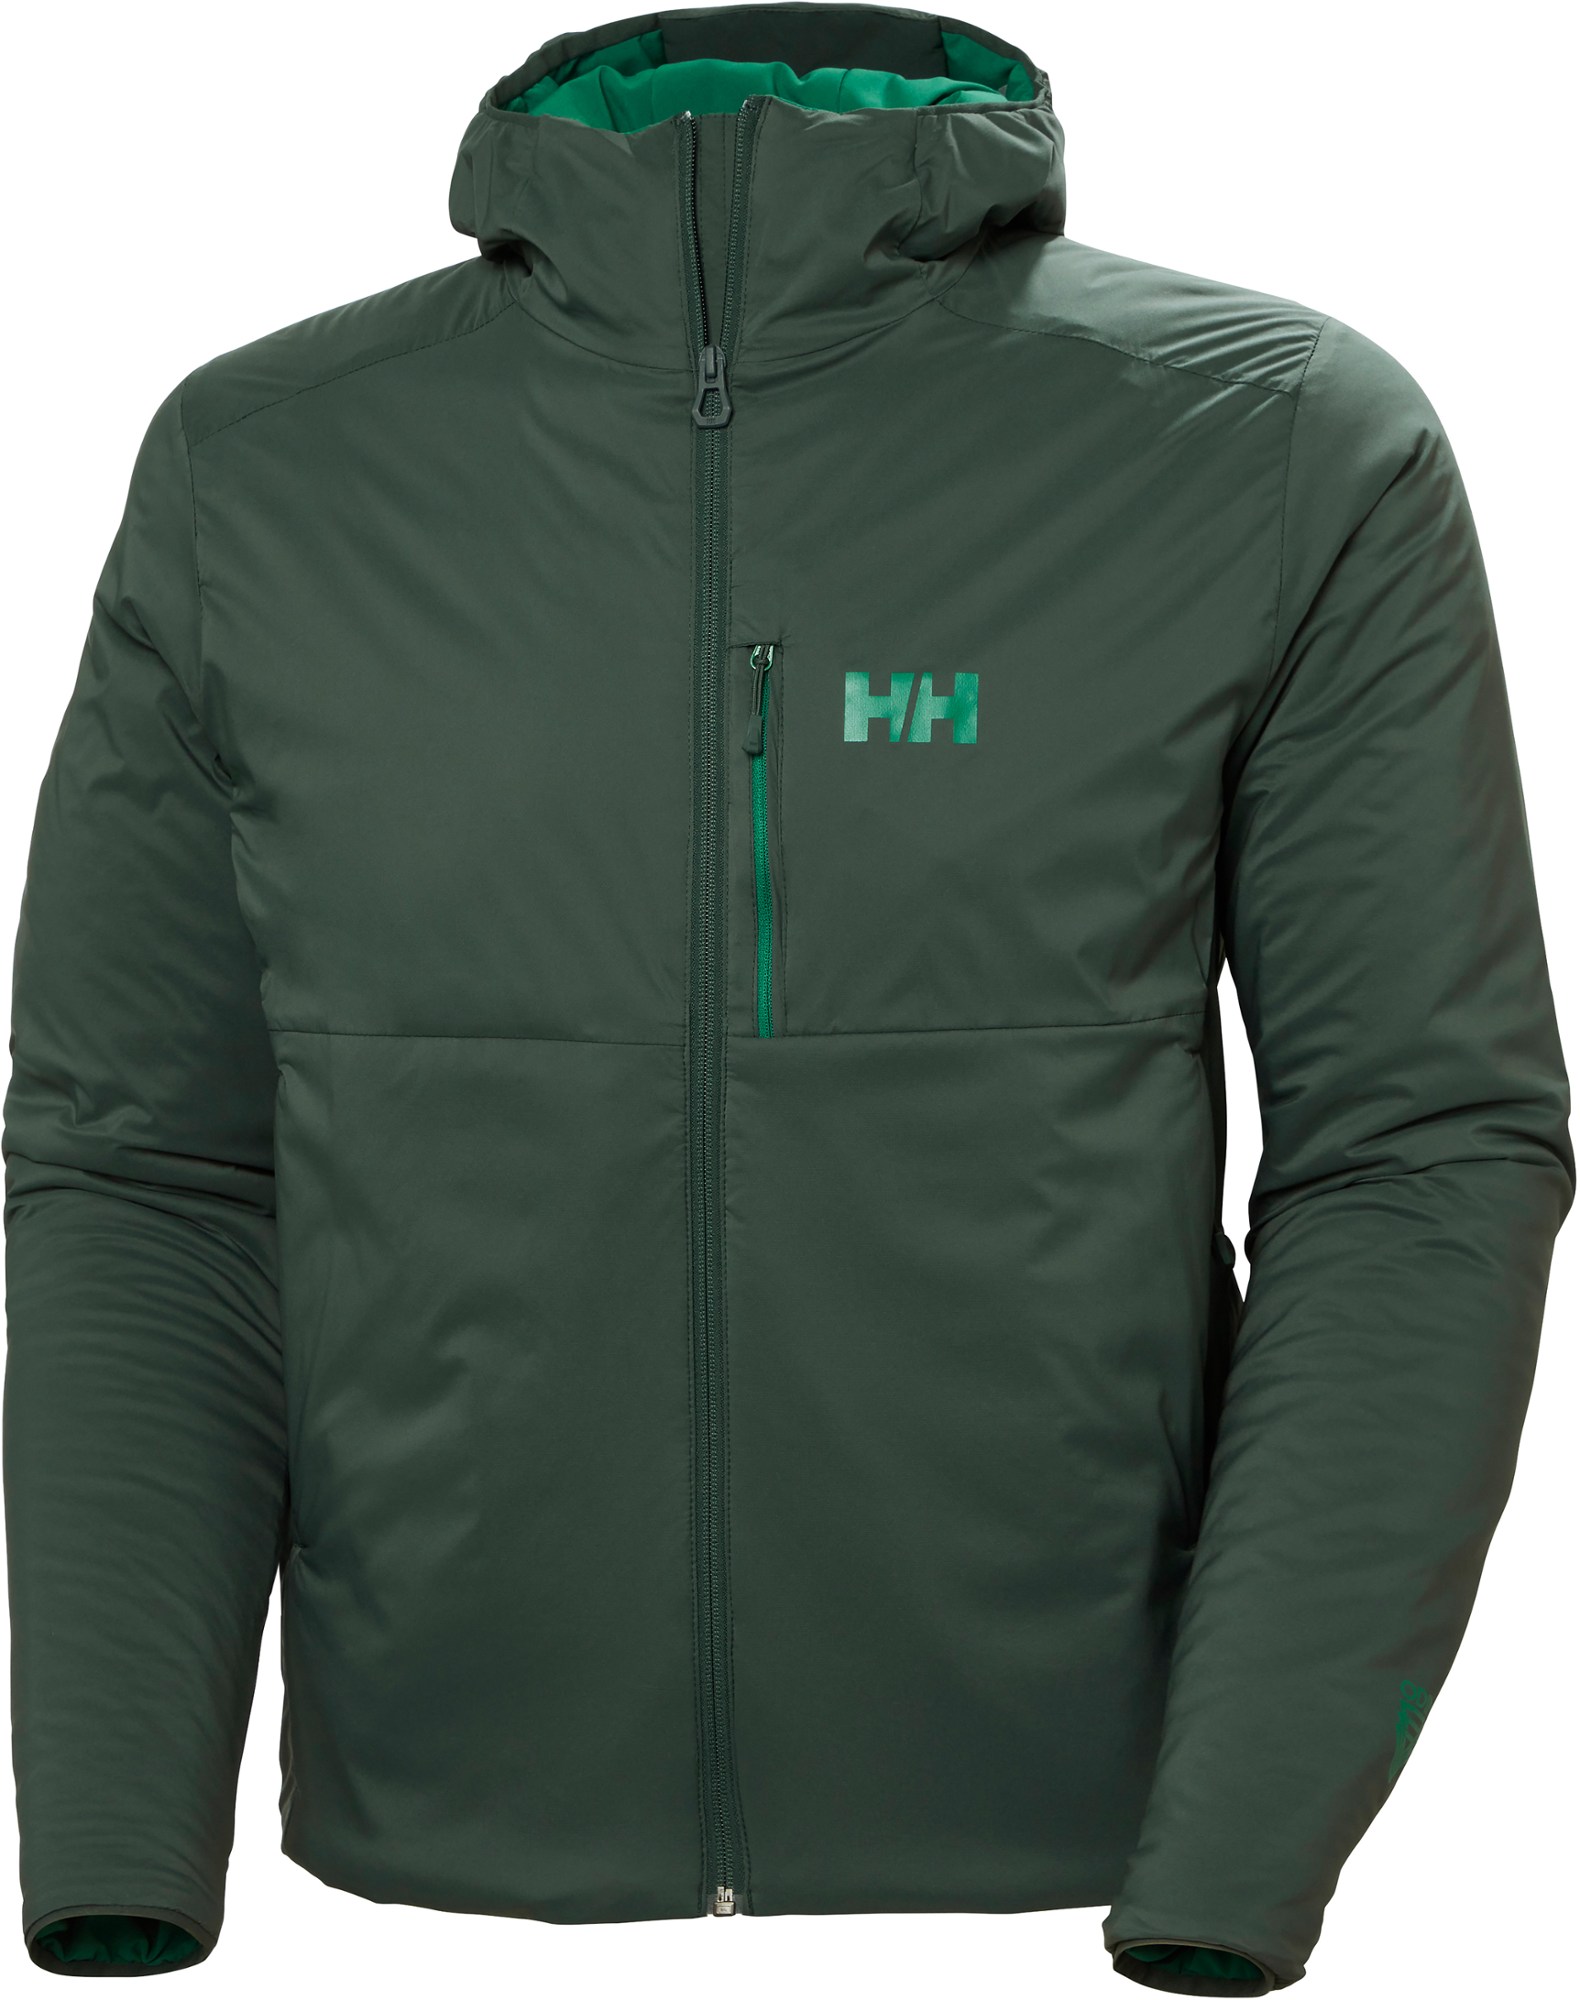 Утепленная куртка Odin Stretch Hooded - Мужская Helly Hansen, зеленый цена и фото